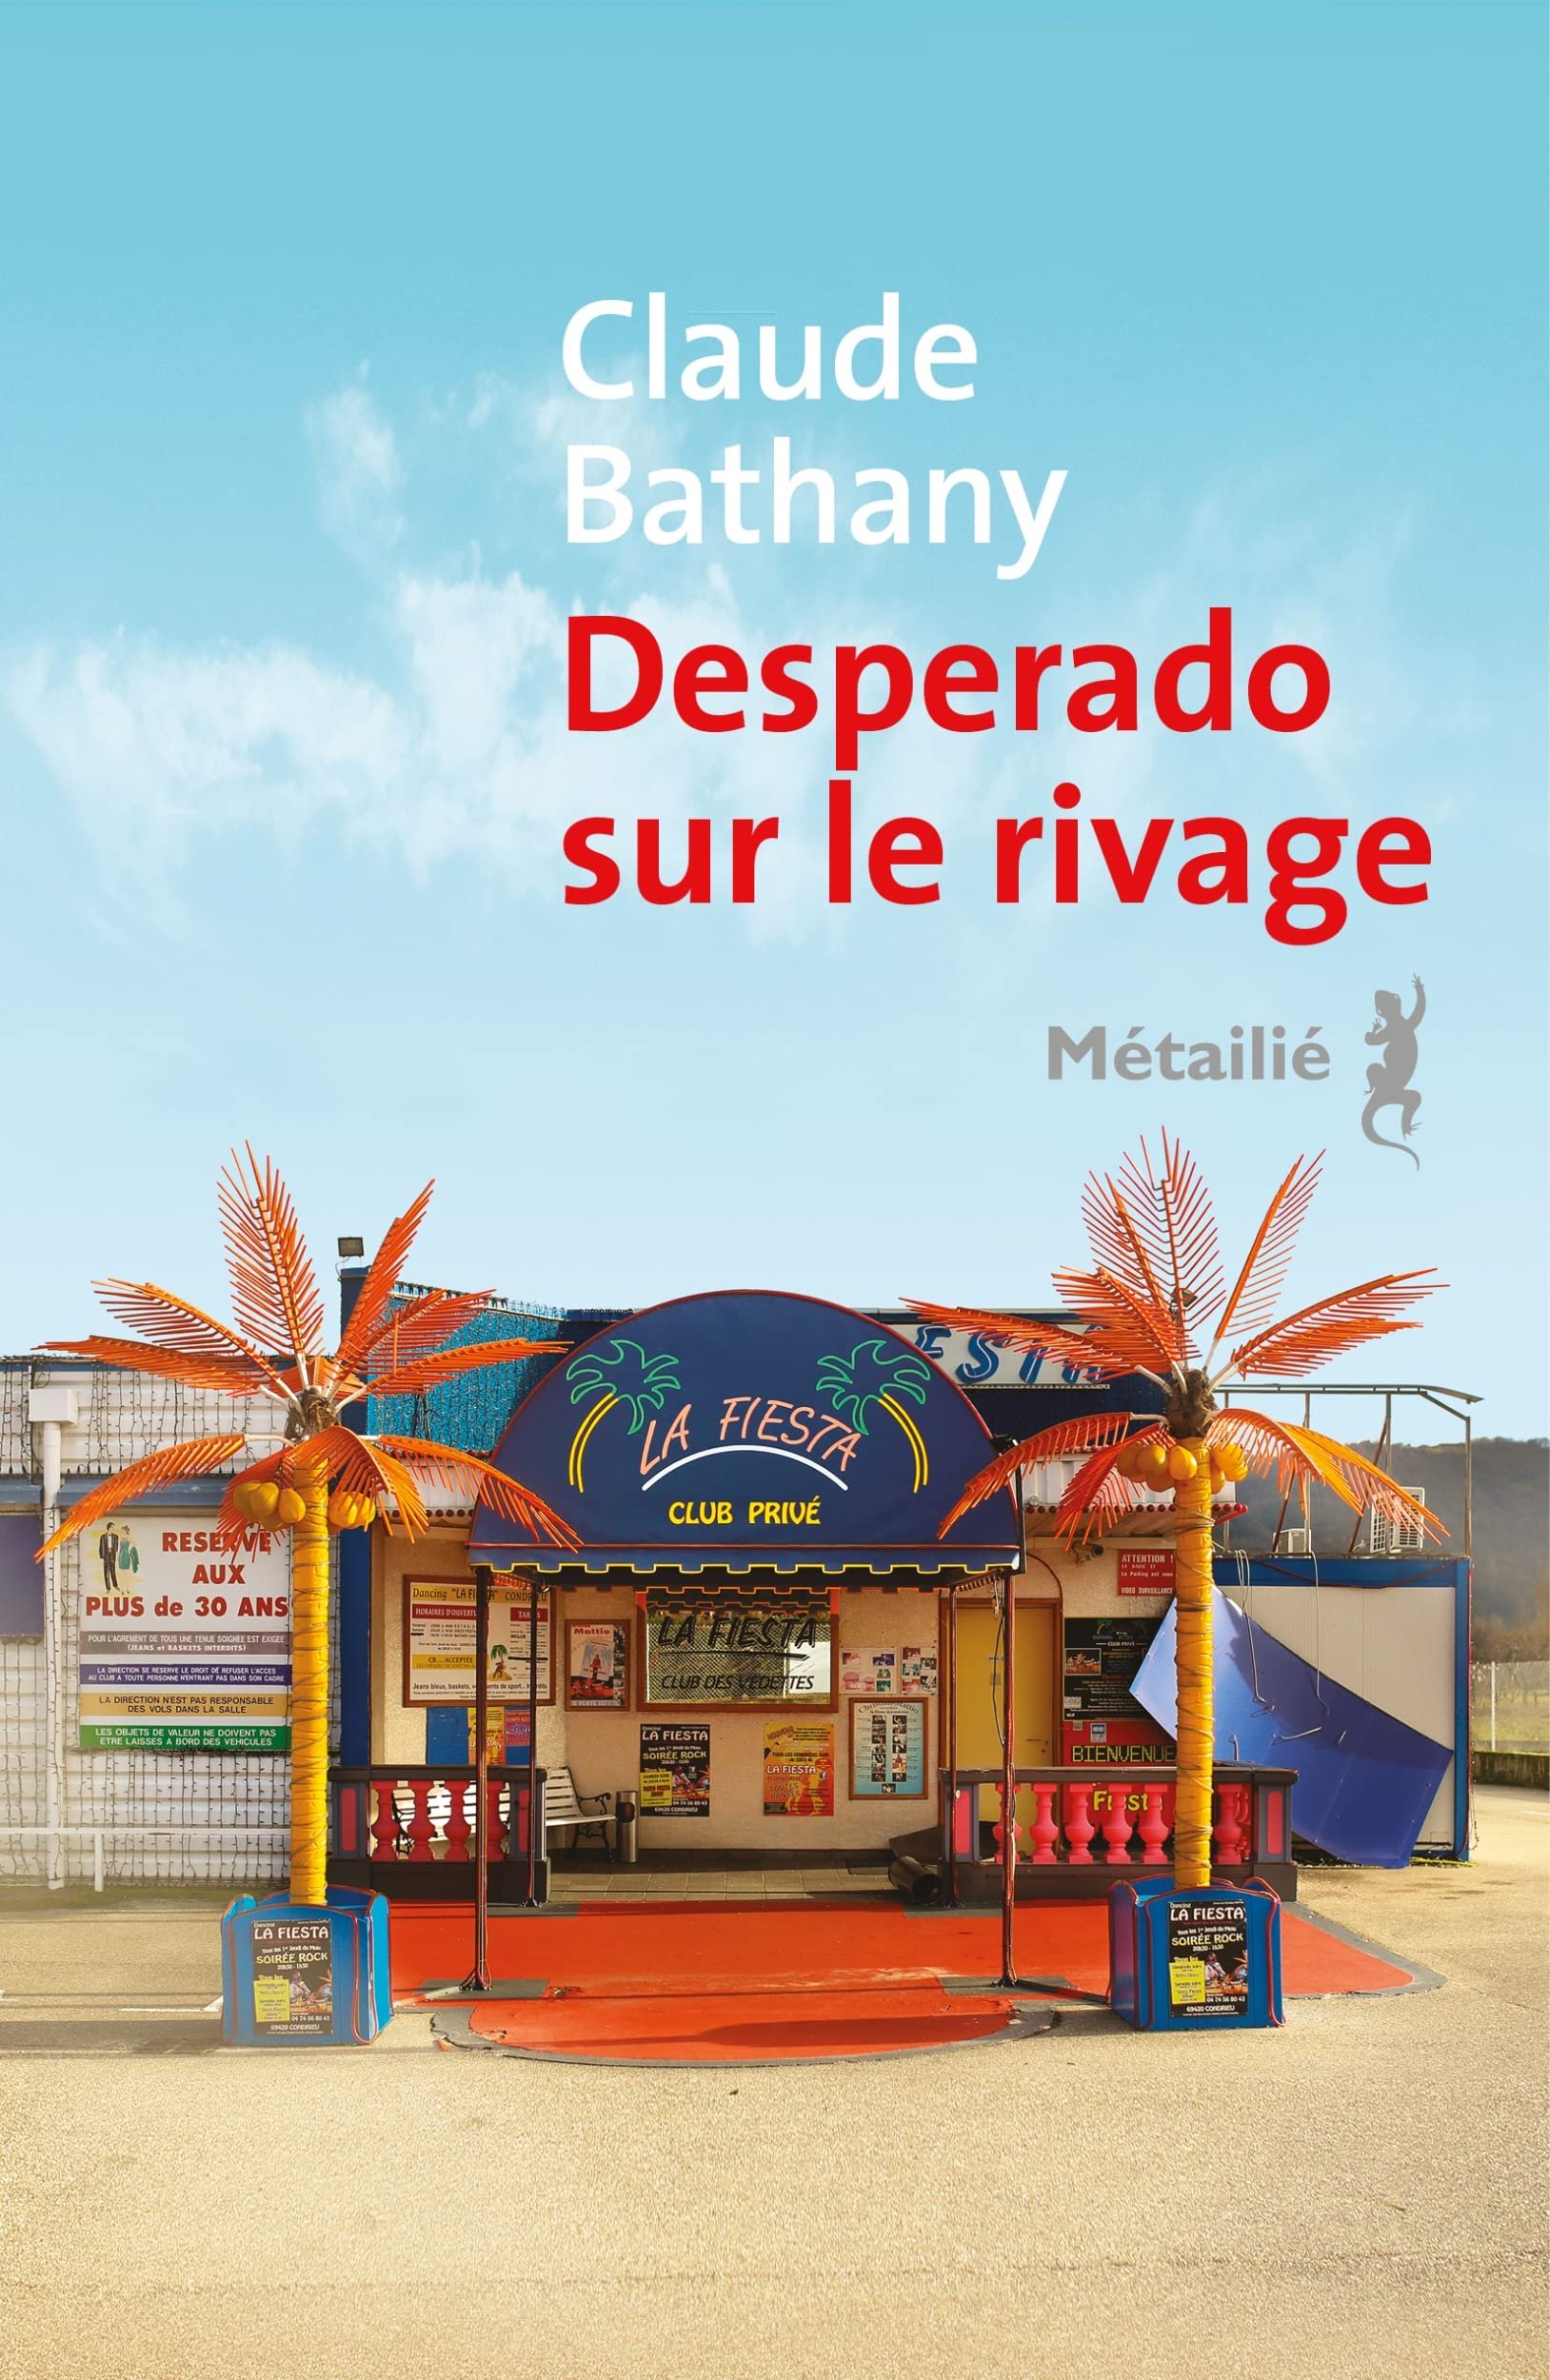 Claude Bathany – Desperado sur le rivage